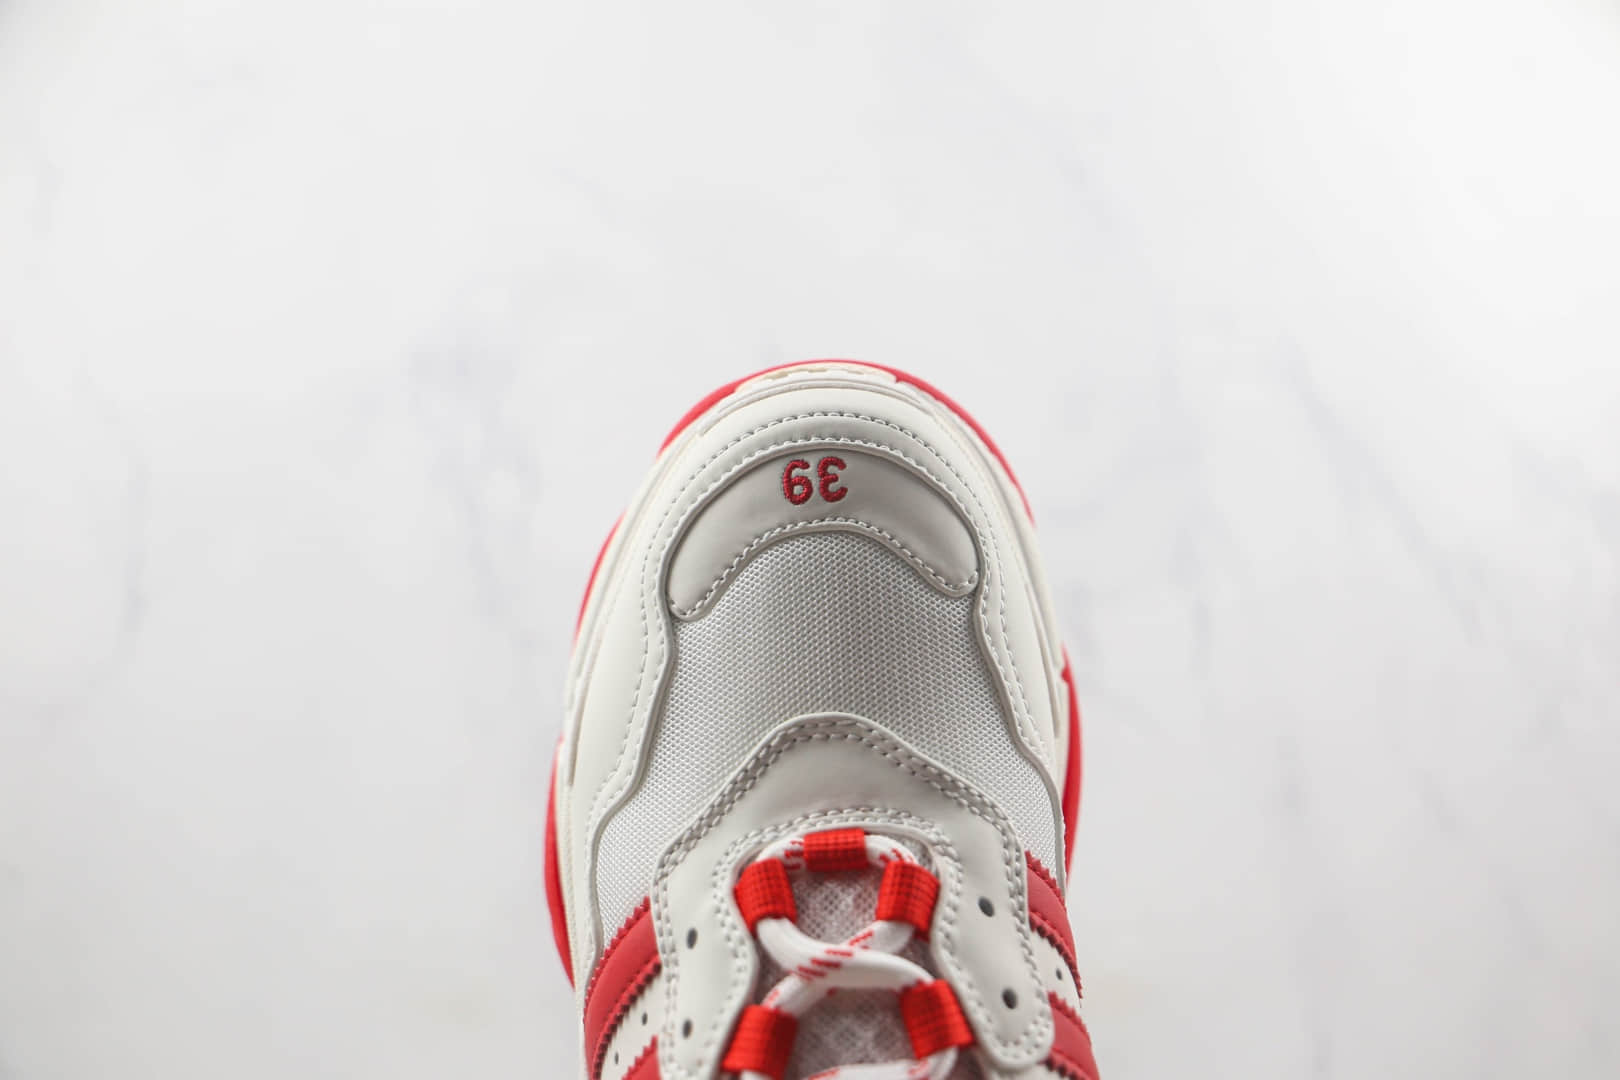 巴黎世家Balenciaga Triple S莞产顶级纯原版本初代1.0白红色老爹鞋原鞋开模一比一打造